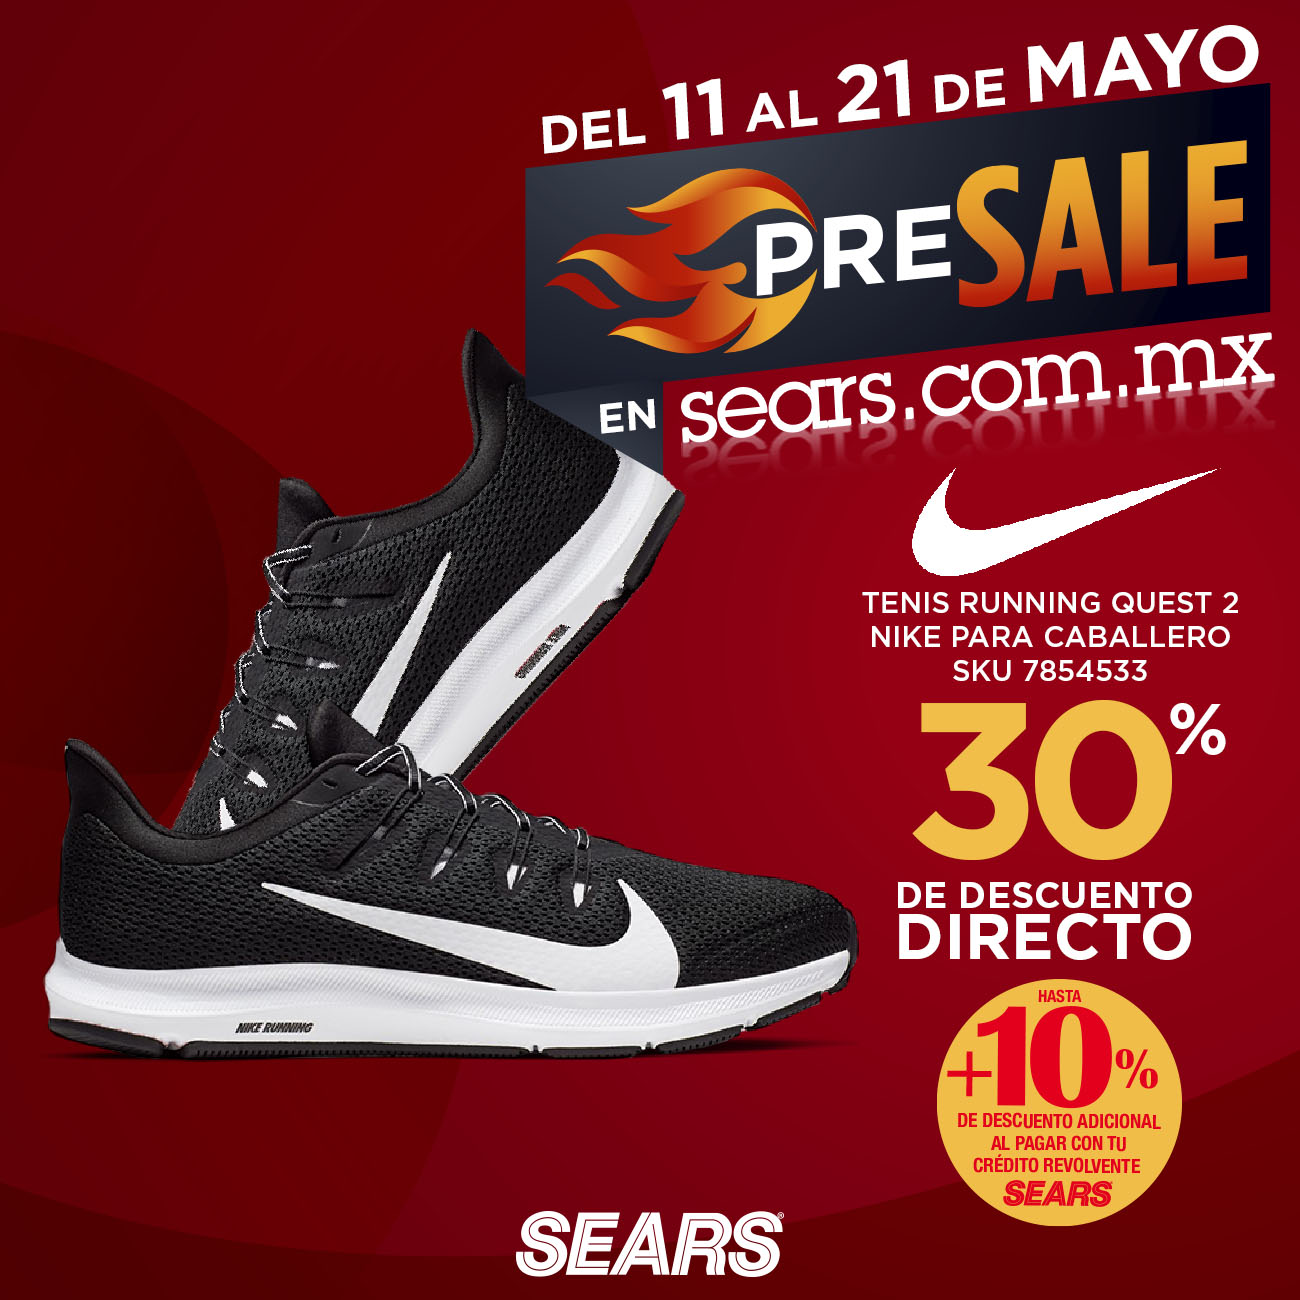 Sears on "¡Compra tus tenis #Nike ahora! Aprovecha nuestro #PreSale🔥. Da clic aquí ✨👉 https://t.co/BBShgbZ2Jm Vigencia del 11 al 21 de mayo 2020. Promoción válida solo en Sears internet.